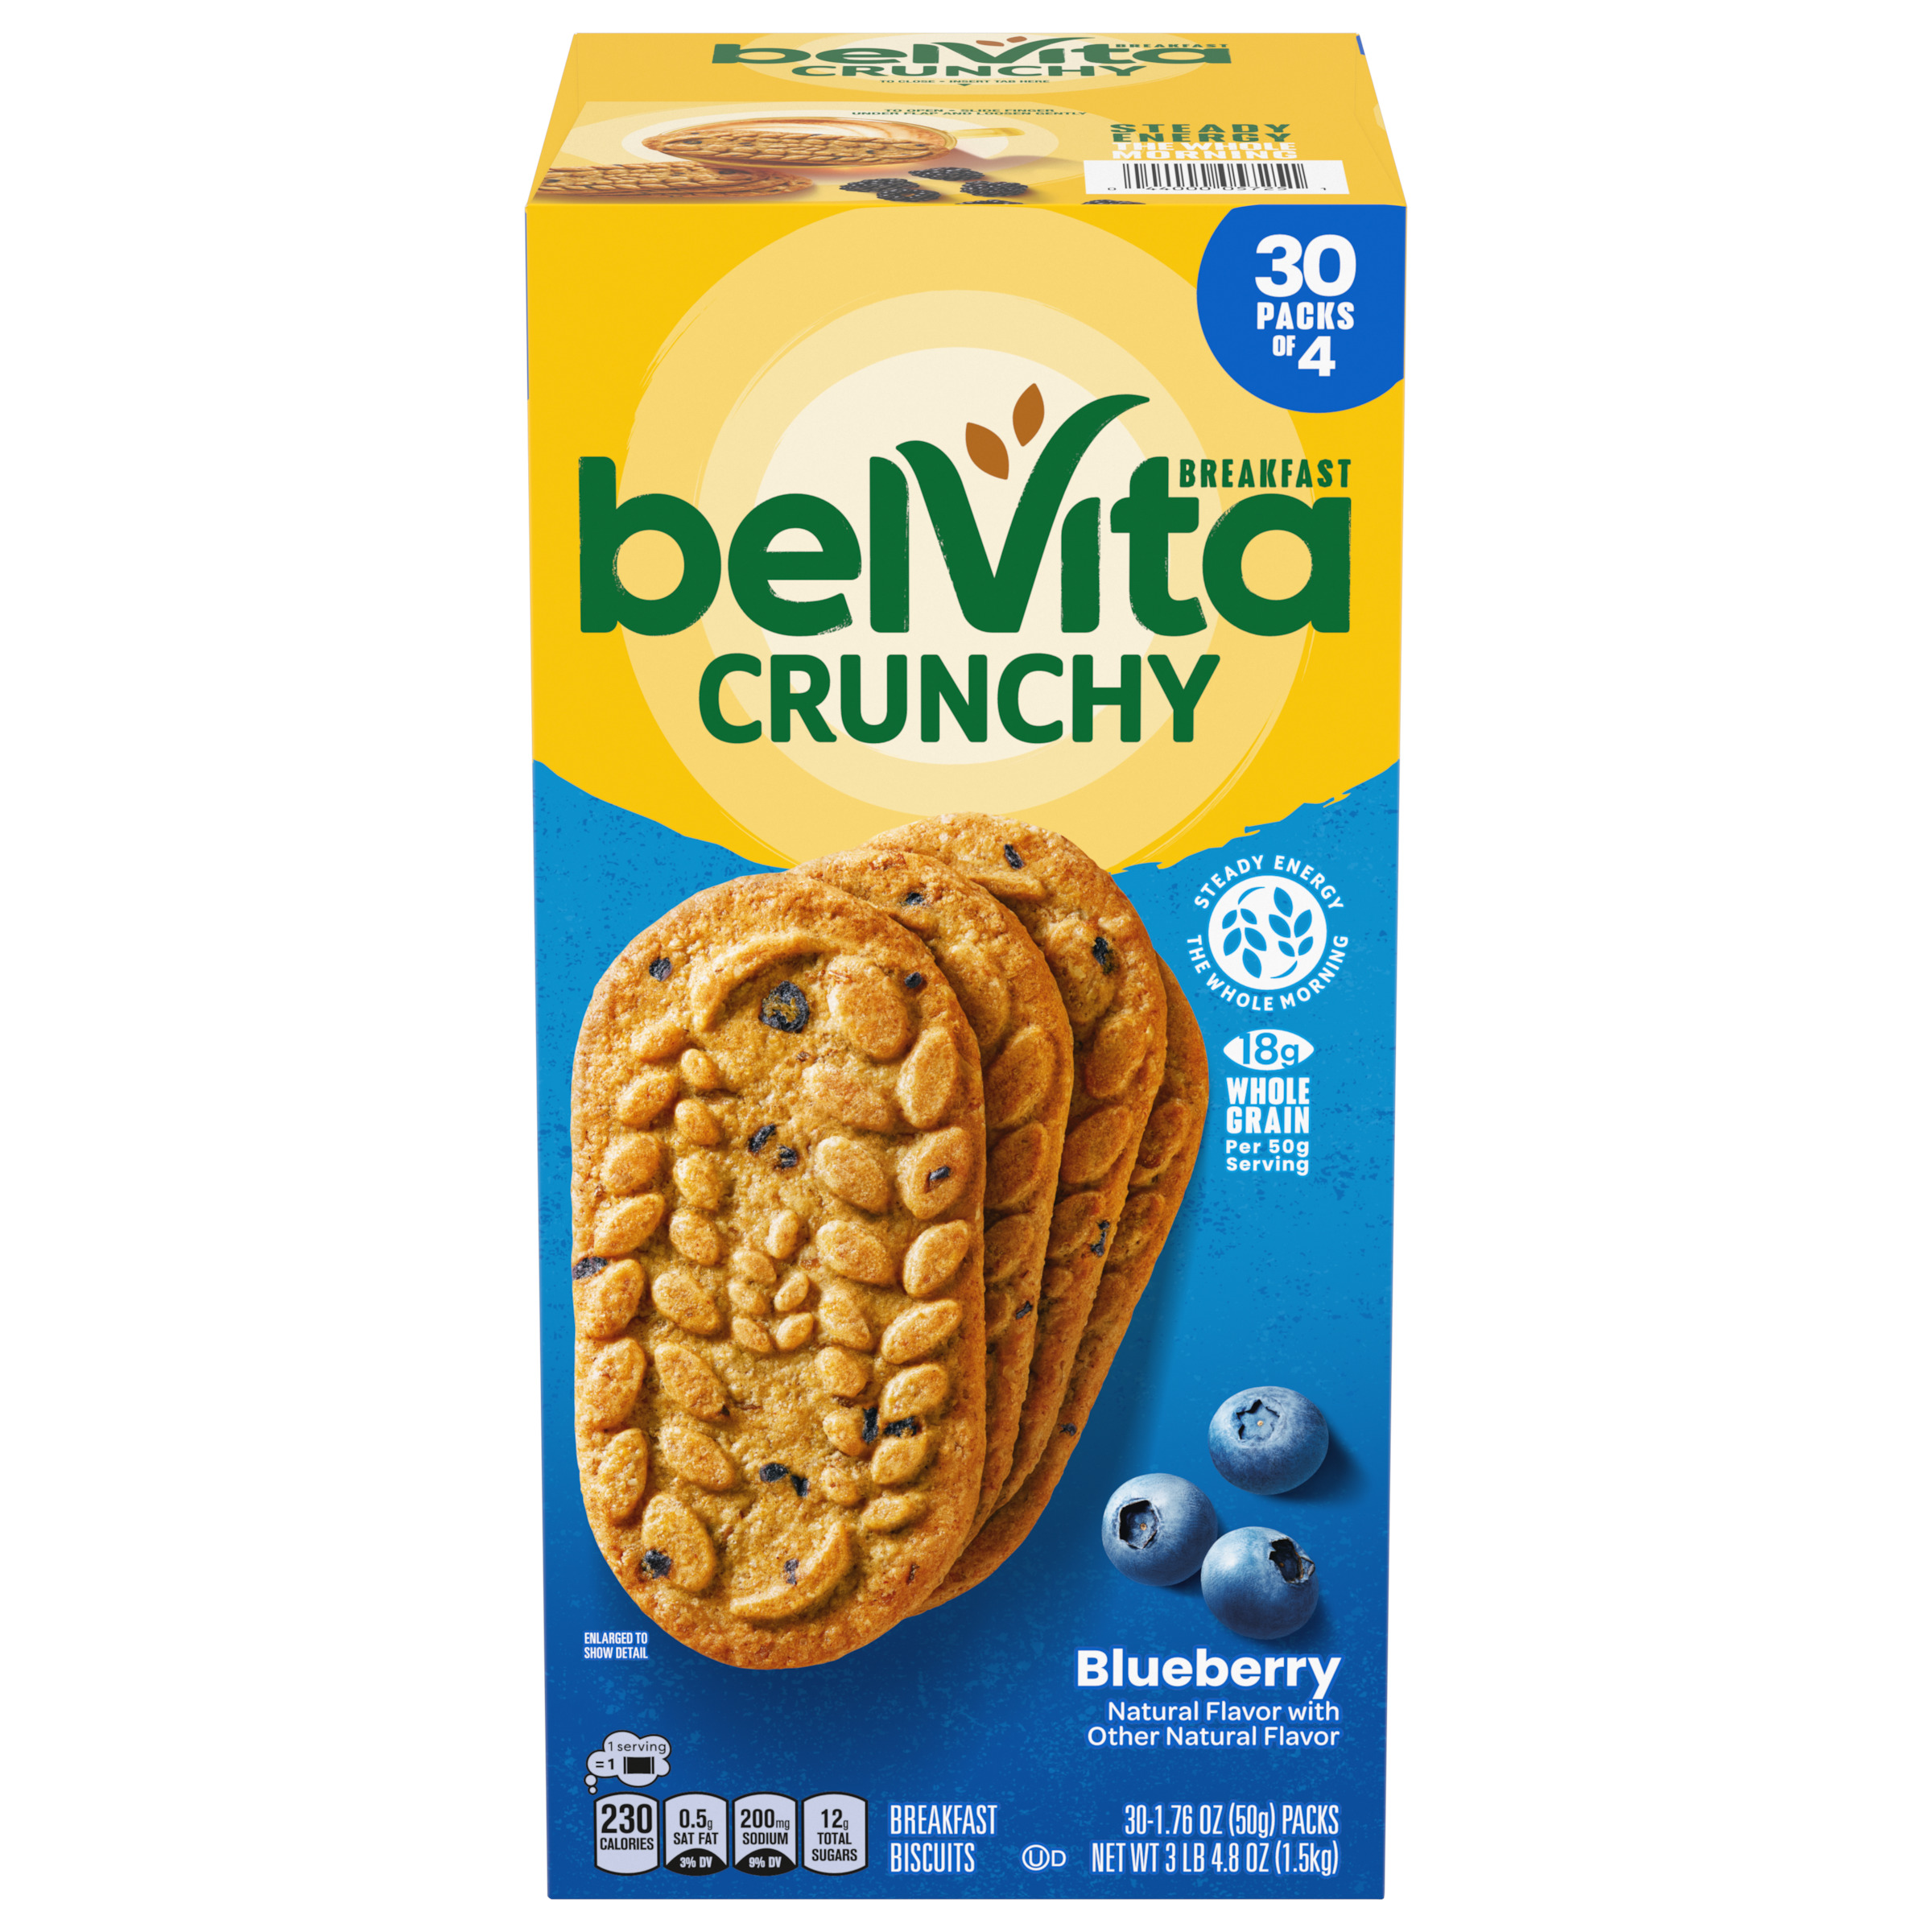 BELVITA Crunchy Blueberry Breakfast Biscuits 52.8 OZ